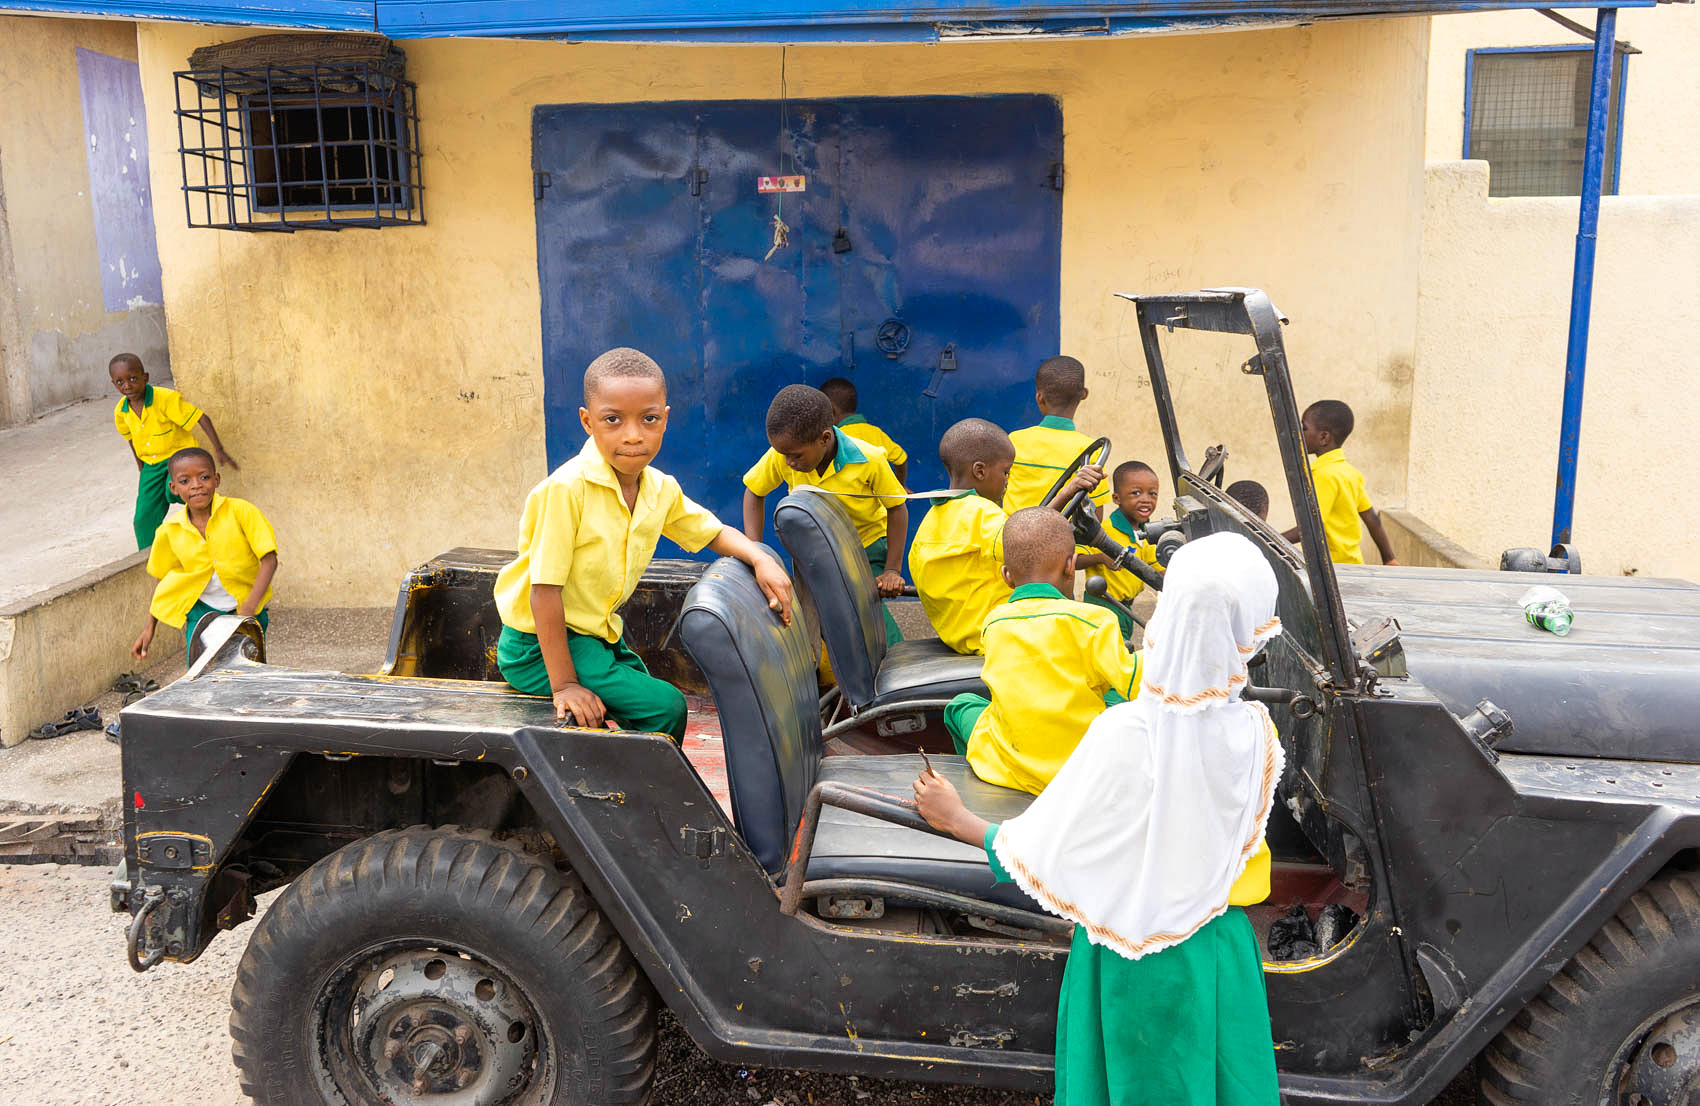 Kinder spielen mit altem Jeep in Afrika